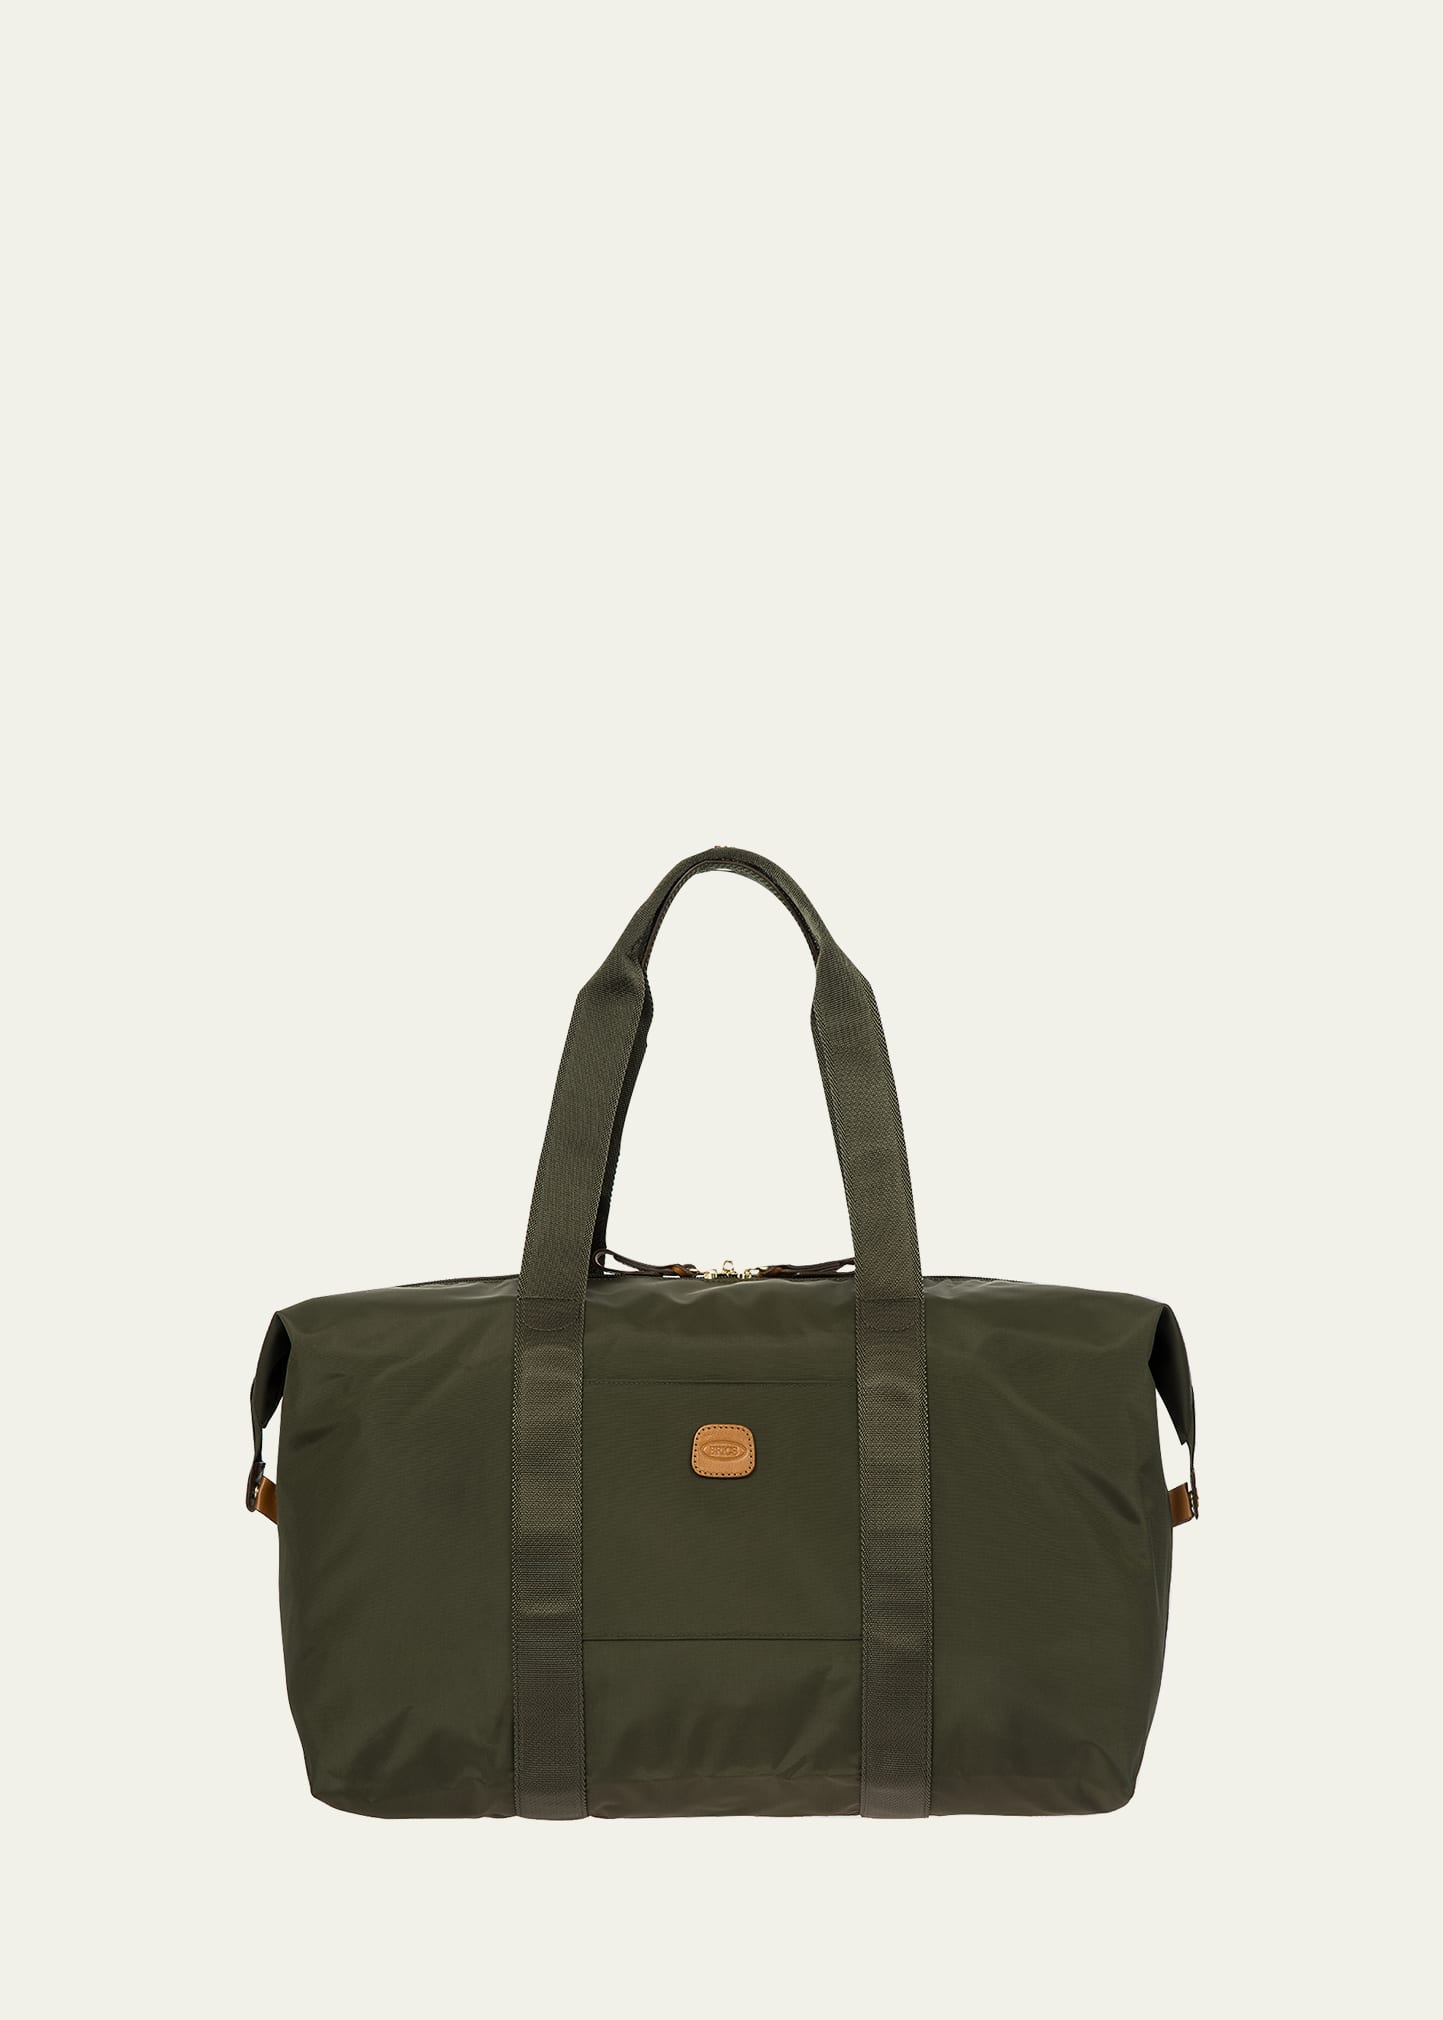 X-Bag 18" Folding Duffel Bag Luggage